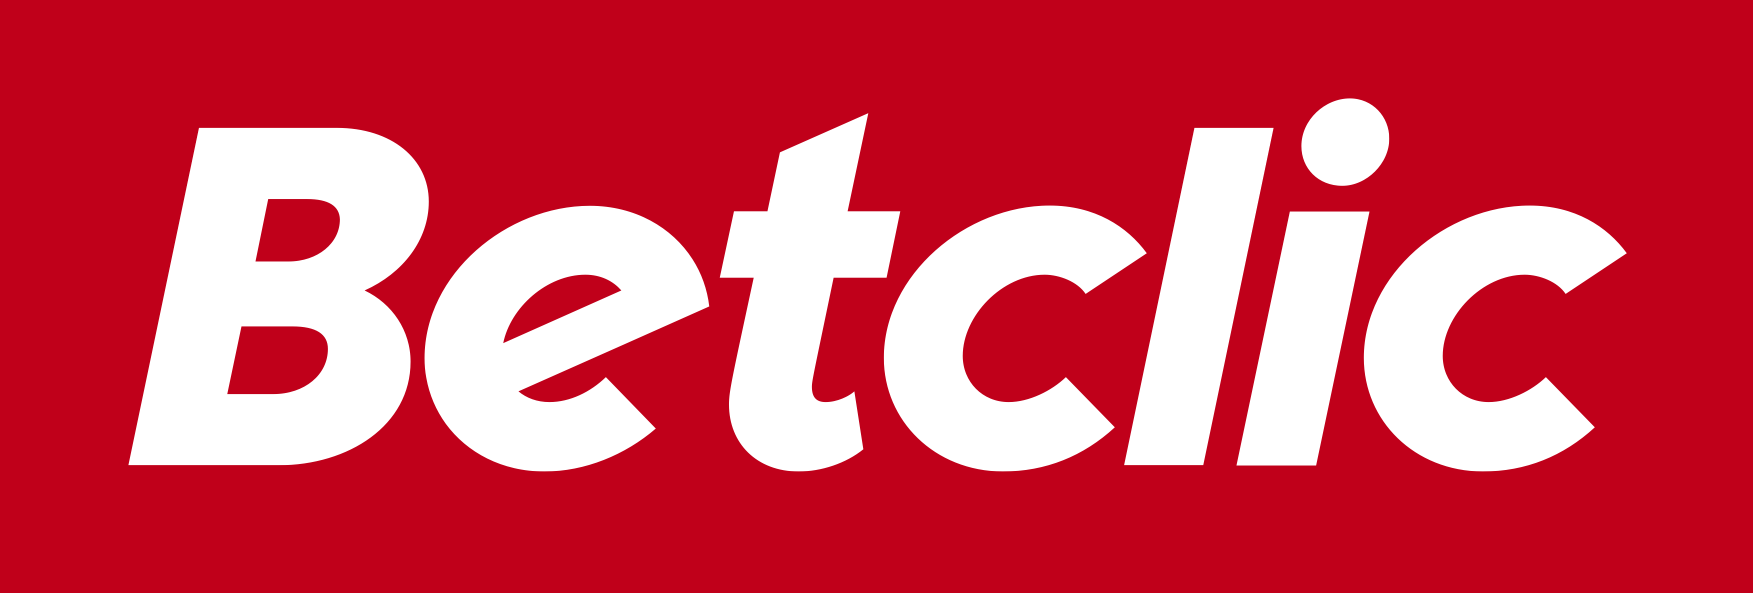 logo Betclic